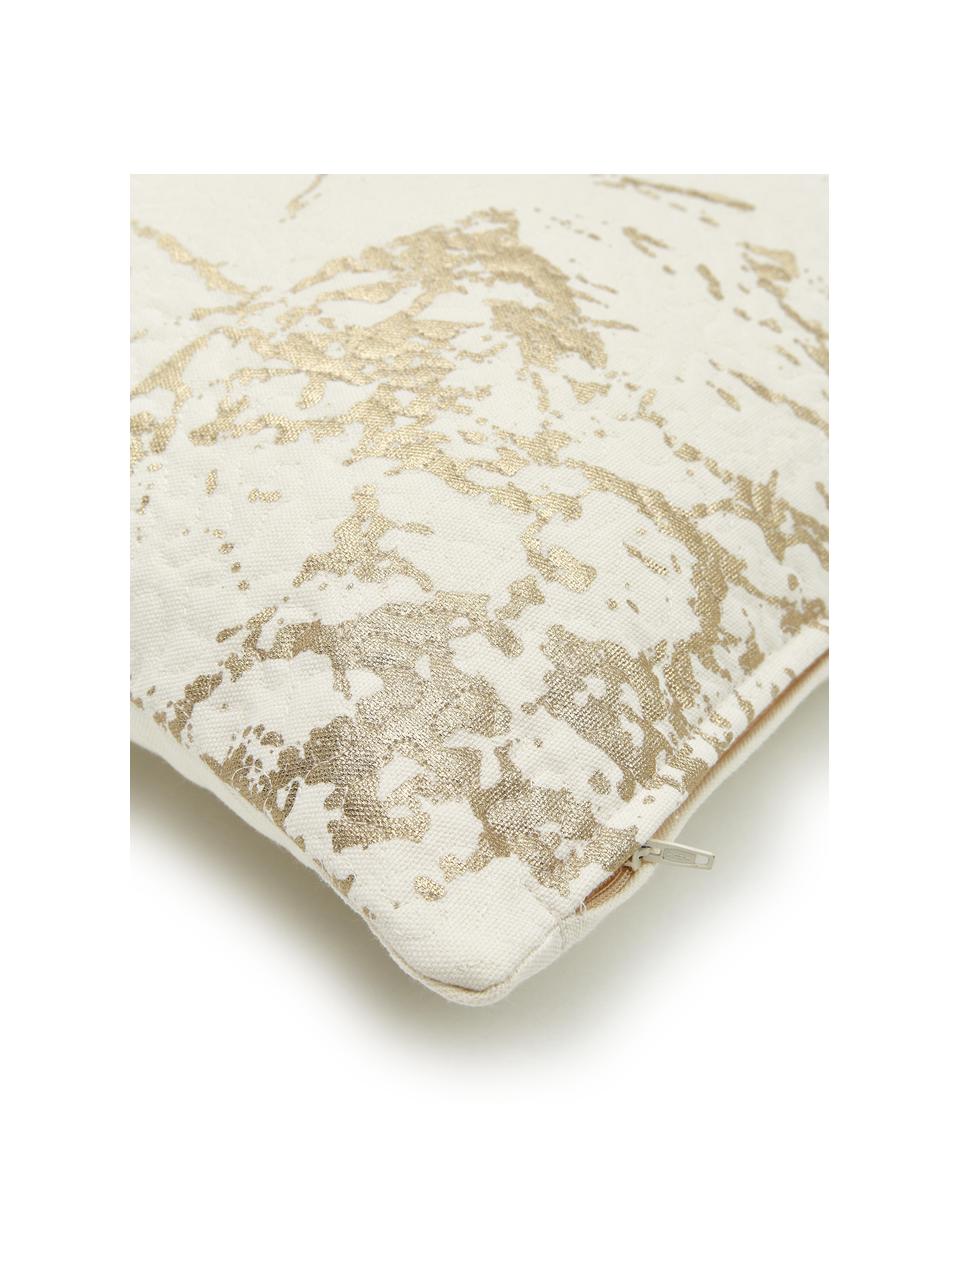 Kissen Quilted mit goldenen Details, mit Inlett, Bezug: 100% Baumwolle, Gebrochenes Weiß, Goldfarben, 45 x 45 cm